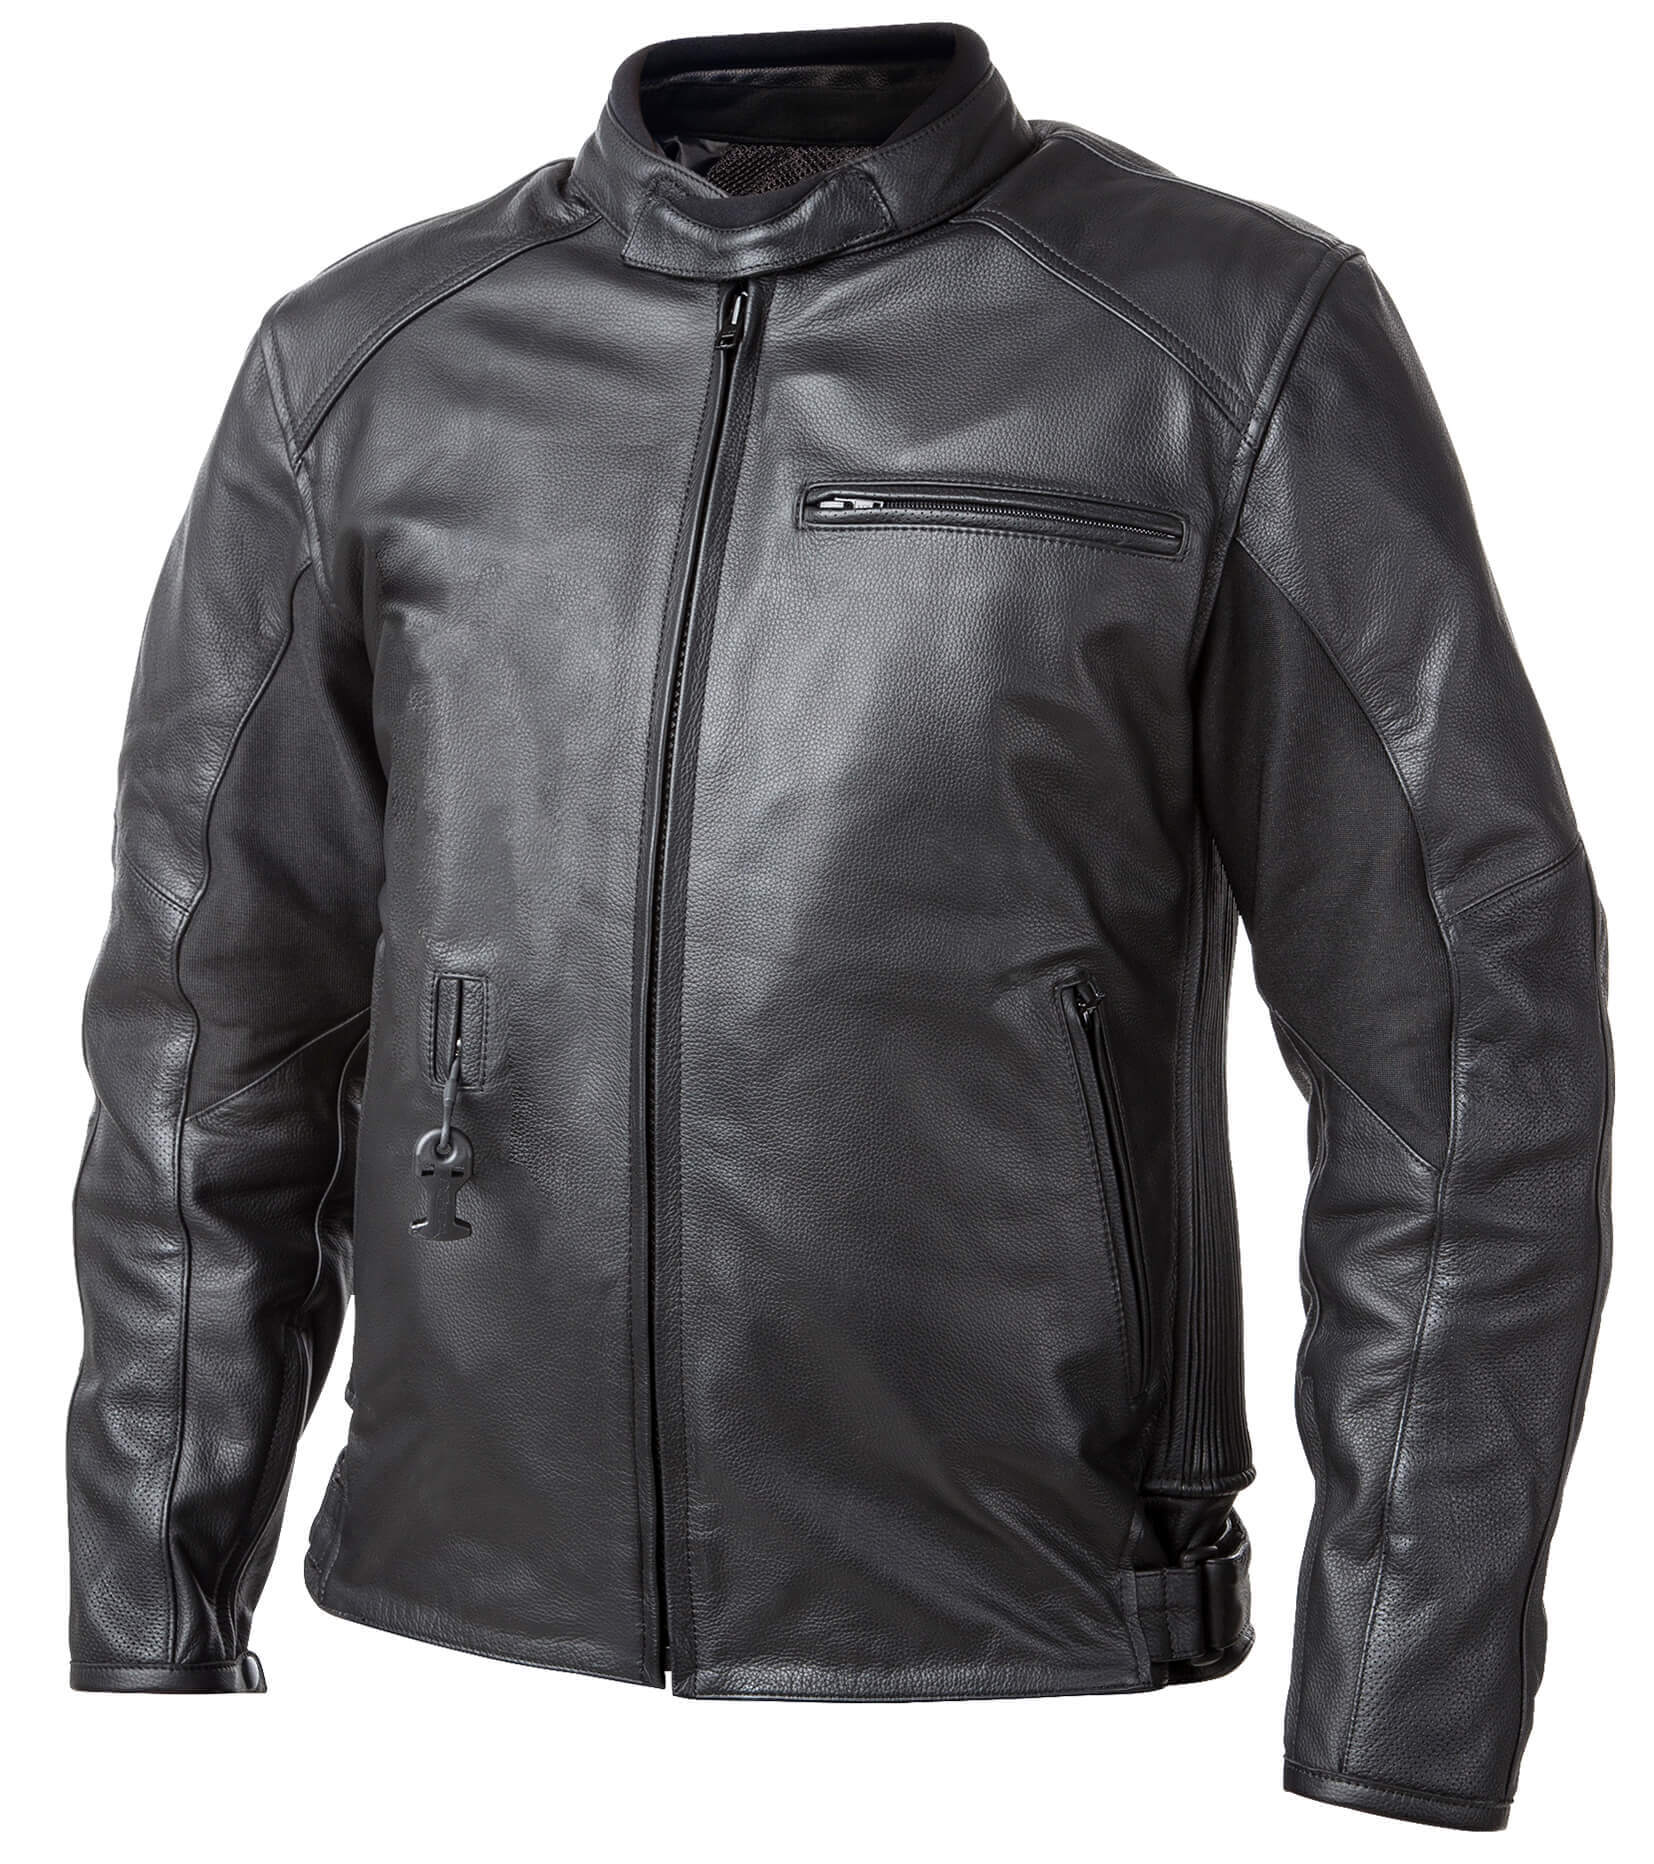 Airbag kabát Helite Roadster Vintage fekete bőr  Fekete  L